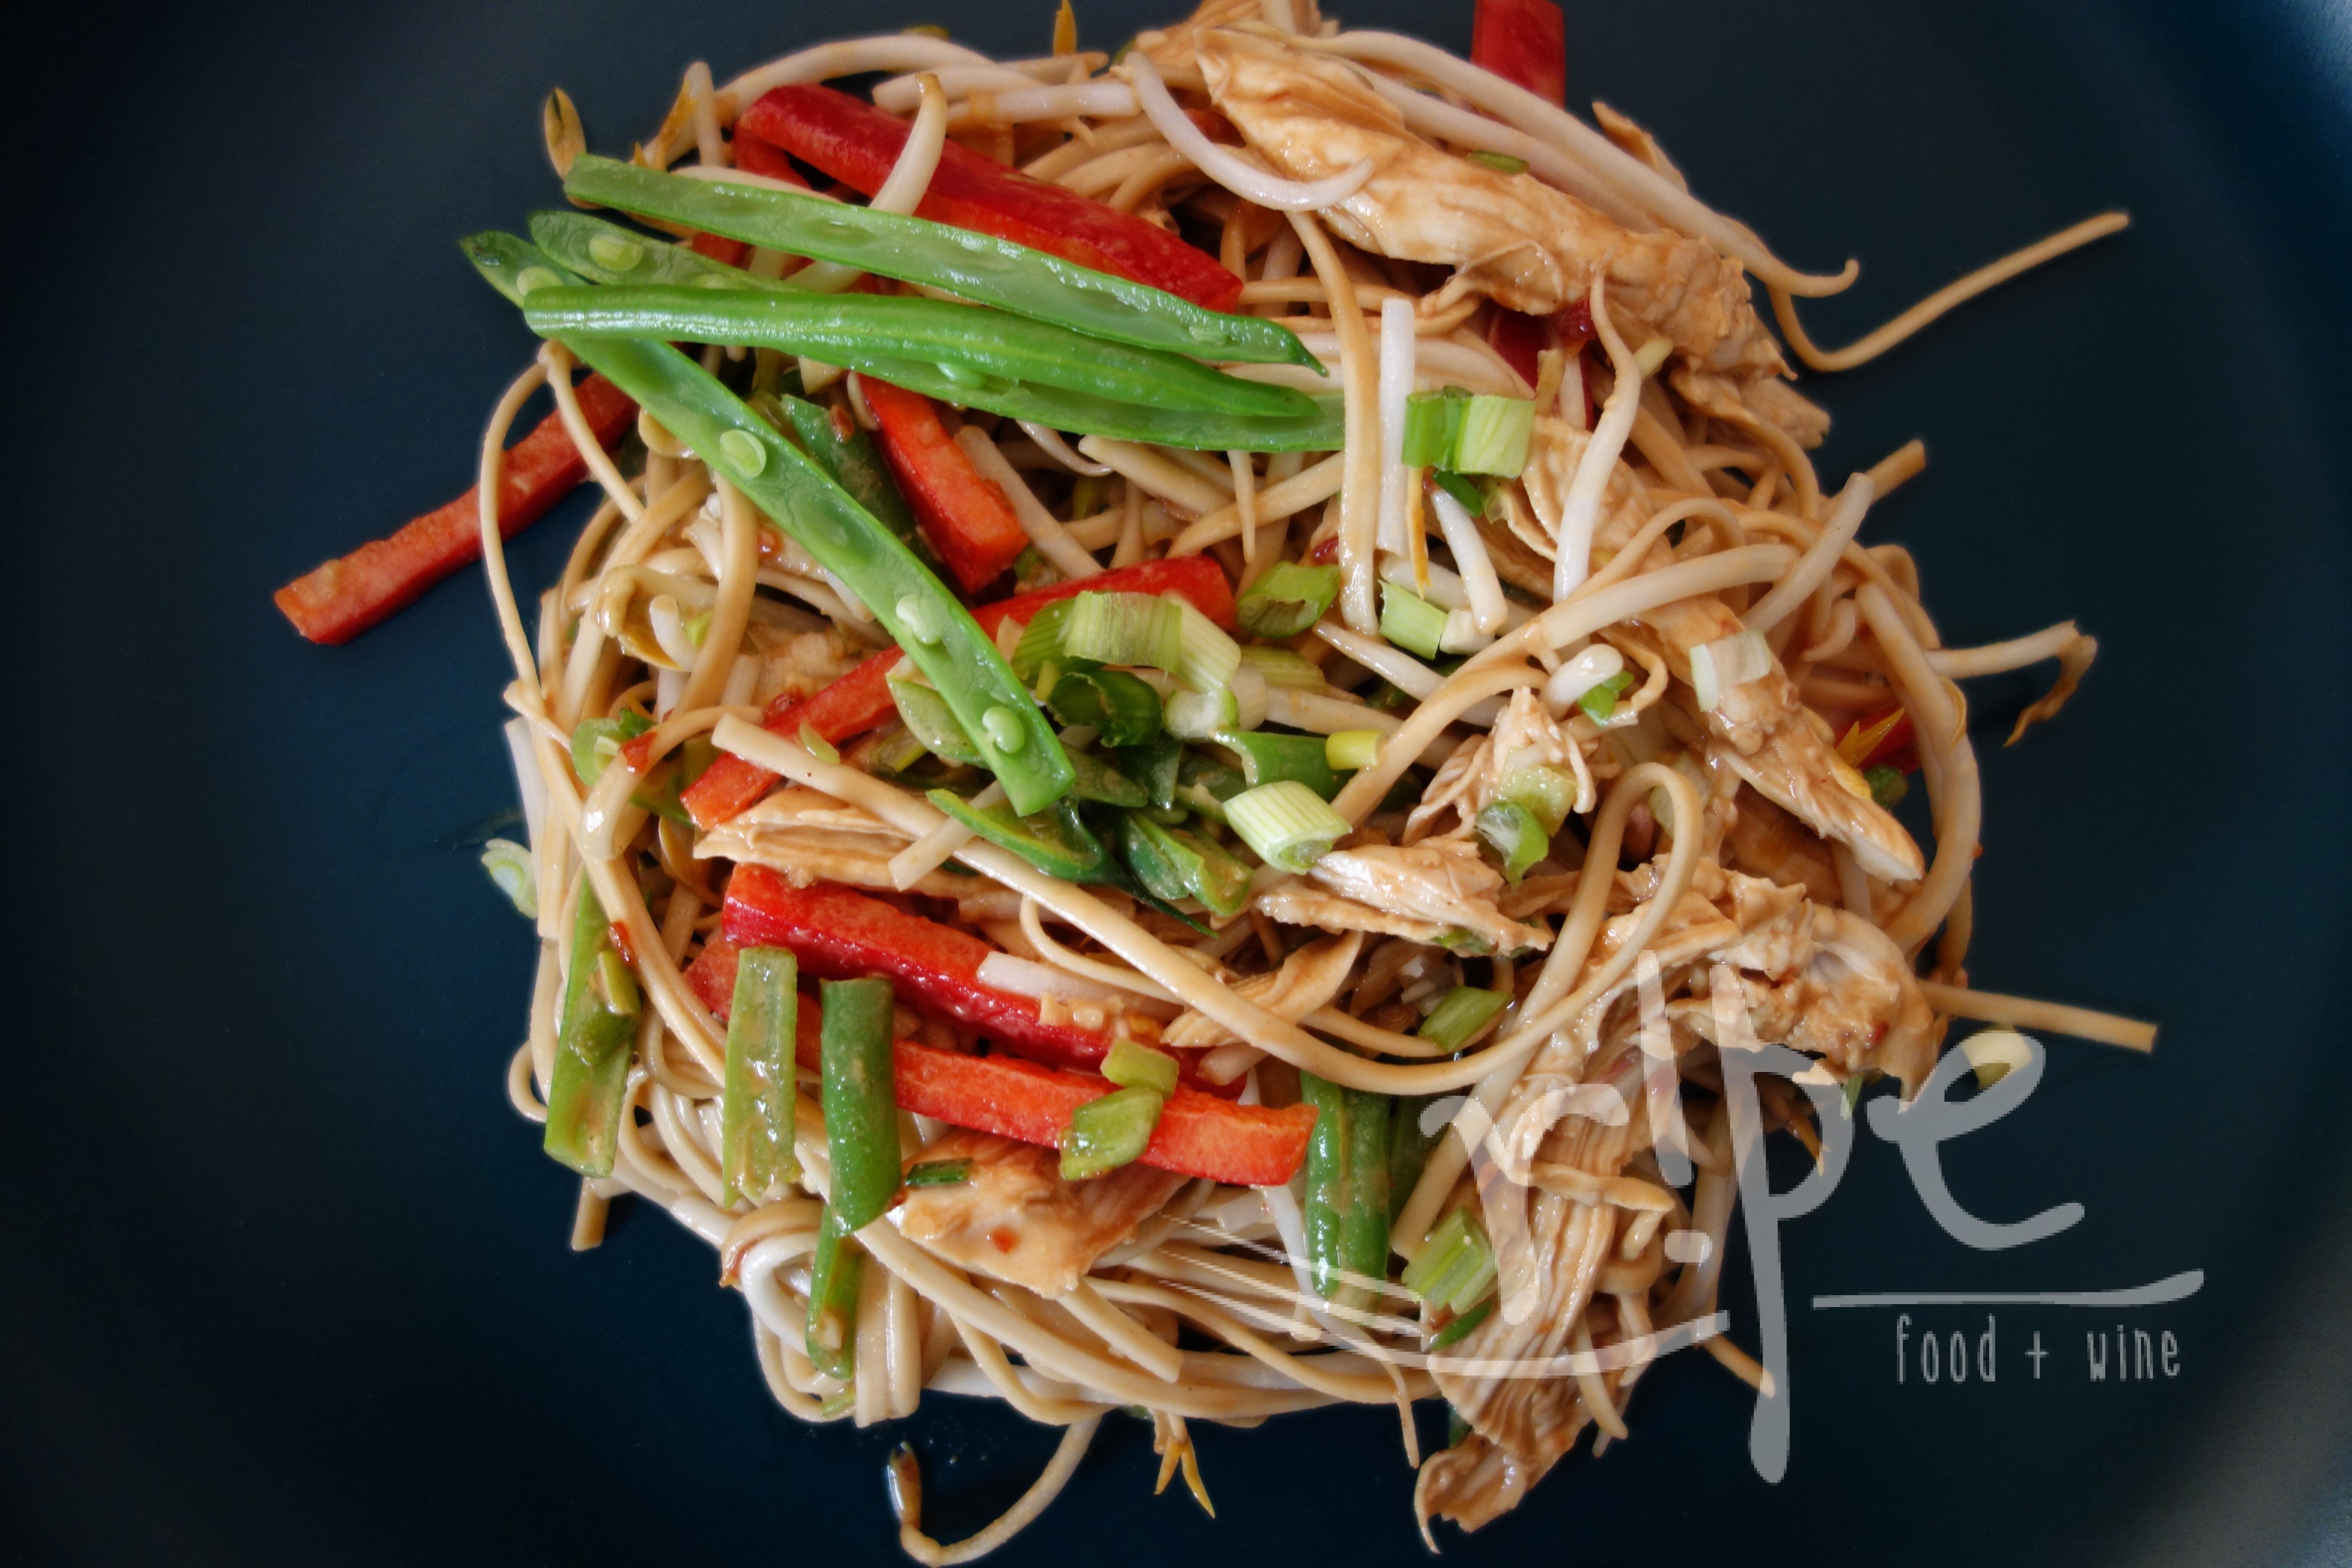 Filipino-Syle “Bang Bang” Noodles + Asian Pantry Essentials